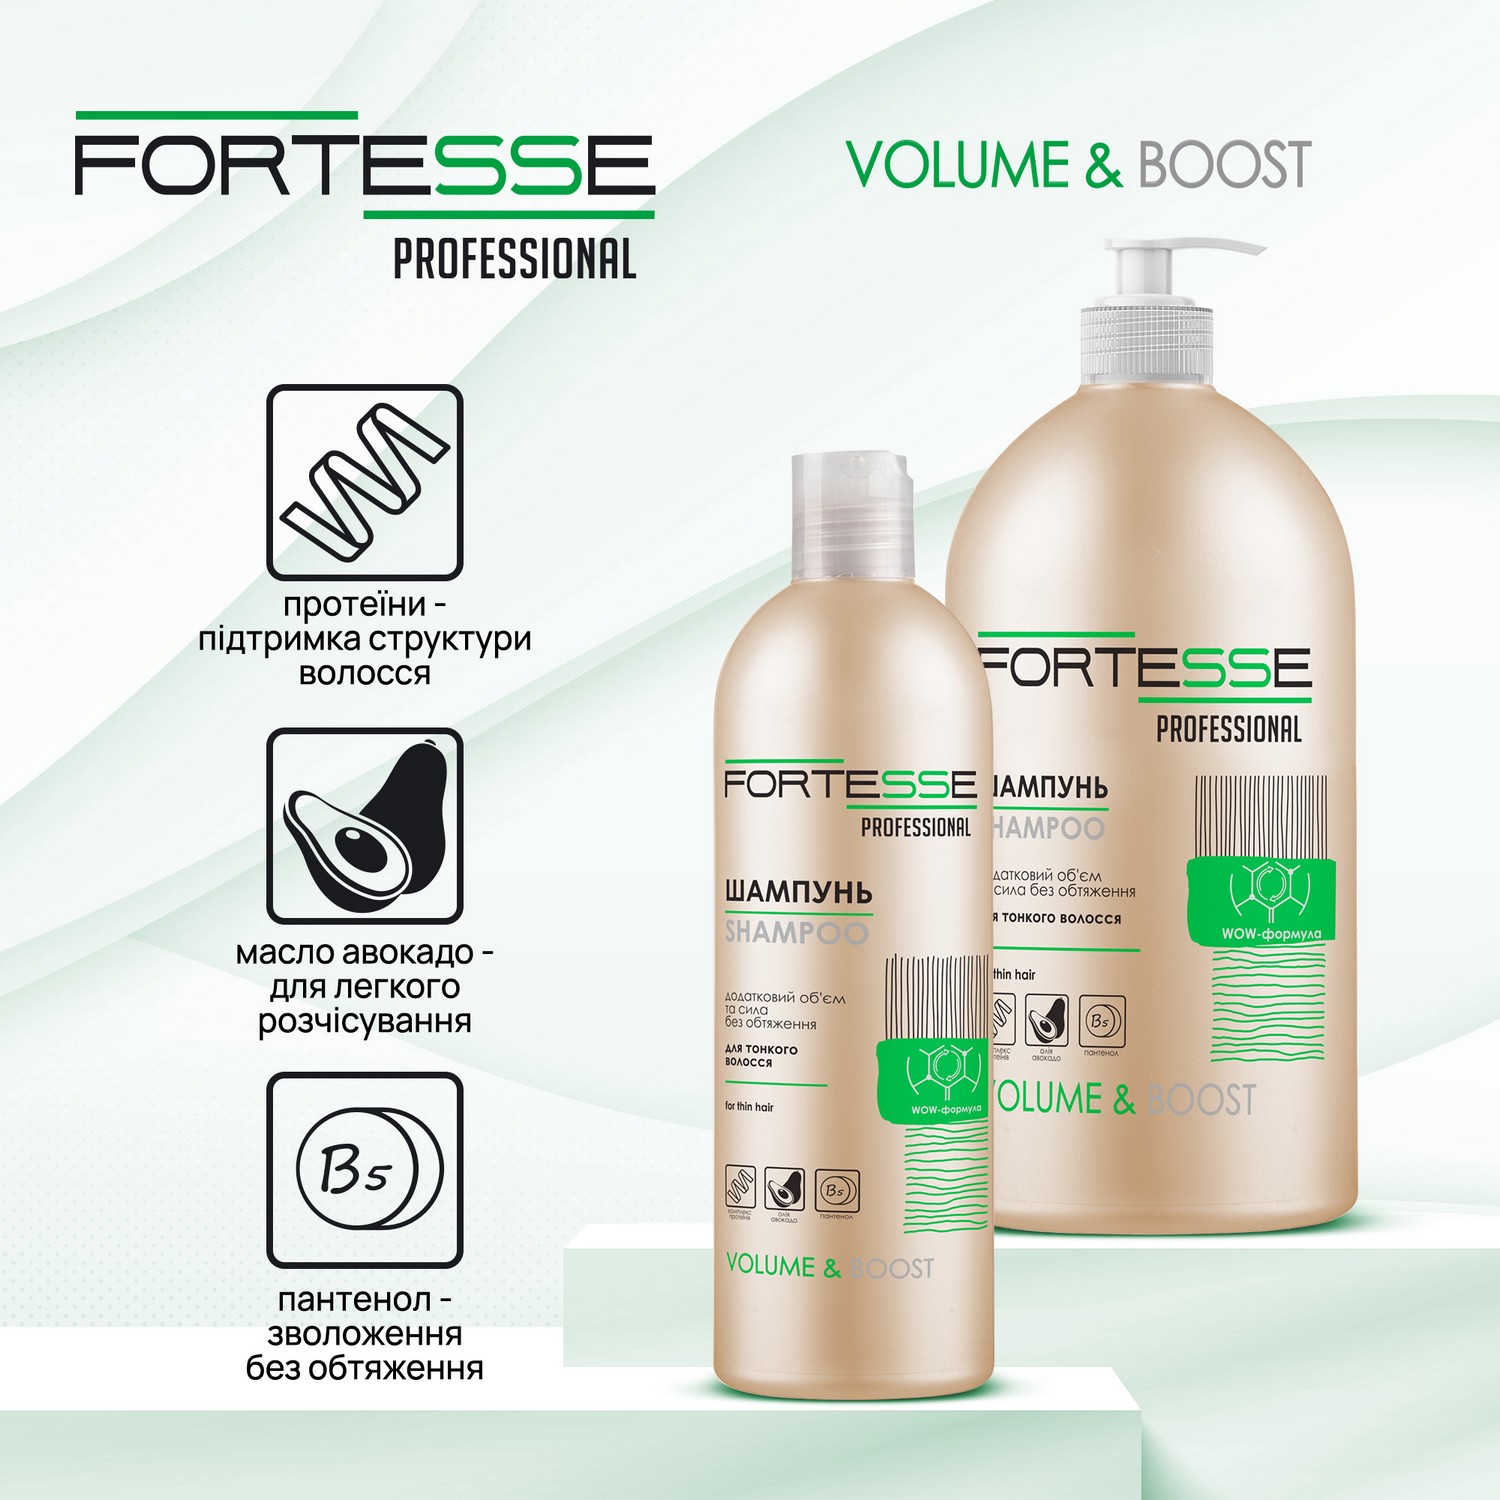 Шампунь Fortesse Professional Volume & Boost Об'єм, для тонкого волосся, 400 мл - фото 2